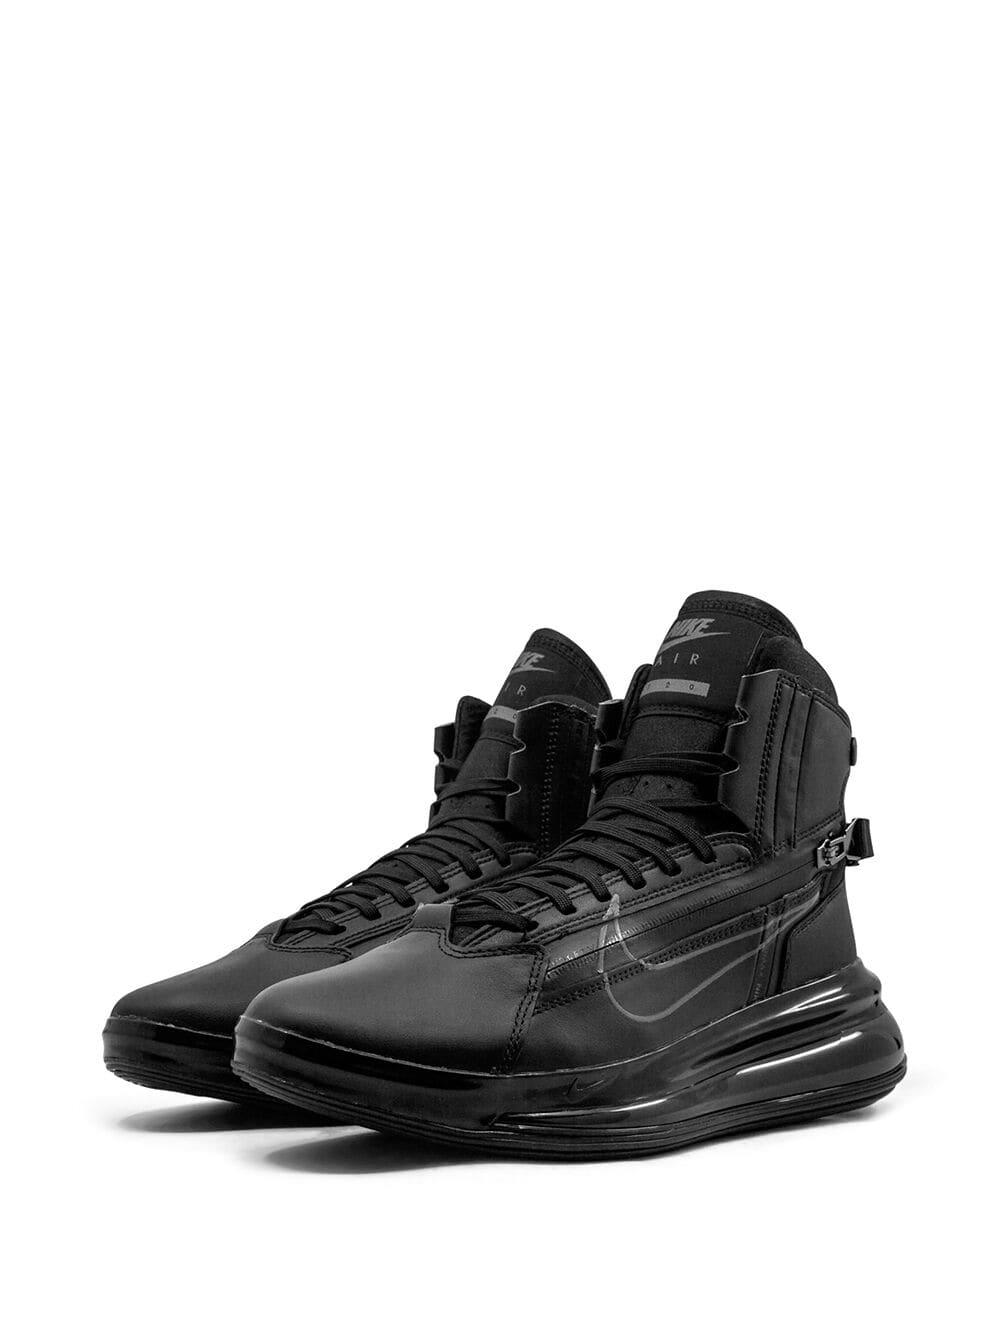 Nike Air Max 720 Saturn Black Dark Grey for Men